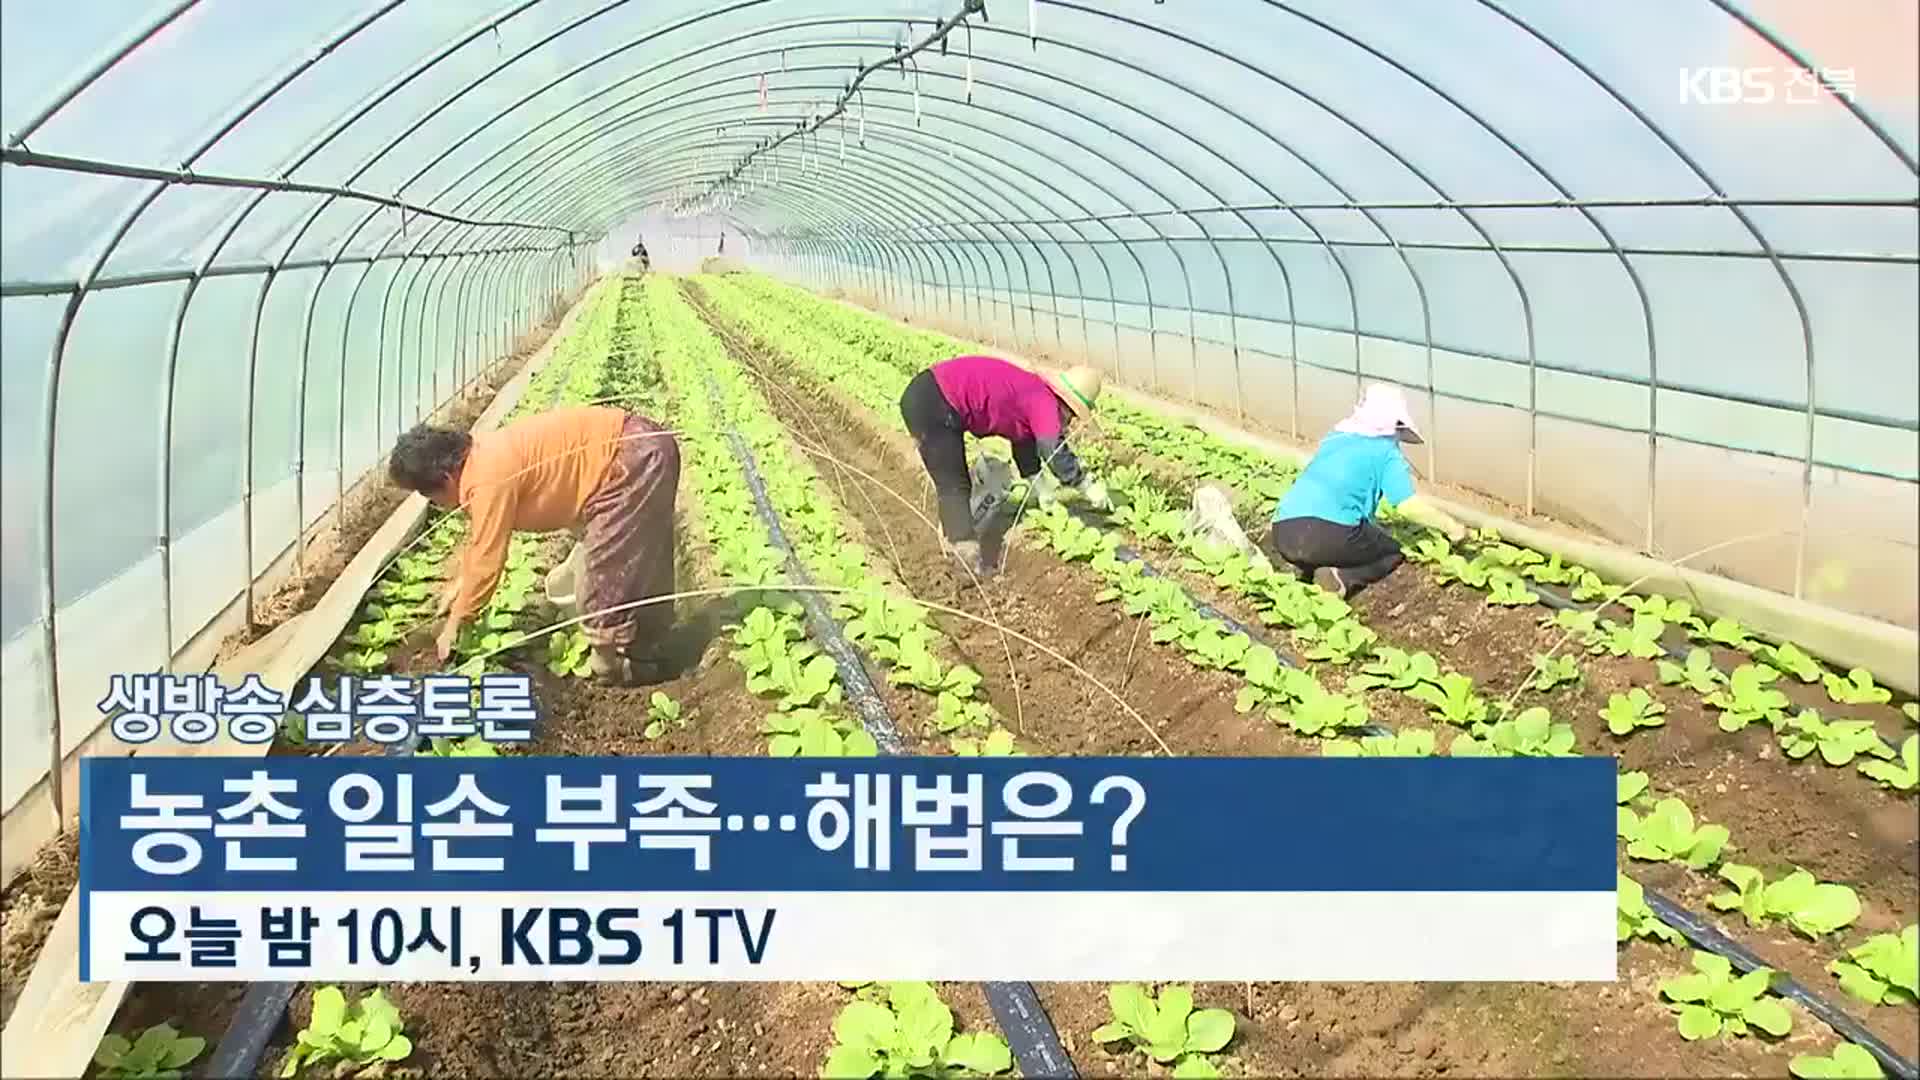 [생방송 심층토론] 농촌 일손 부족…해법은? 오늘 밤 10시 방송